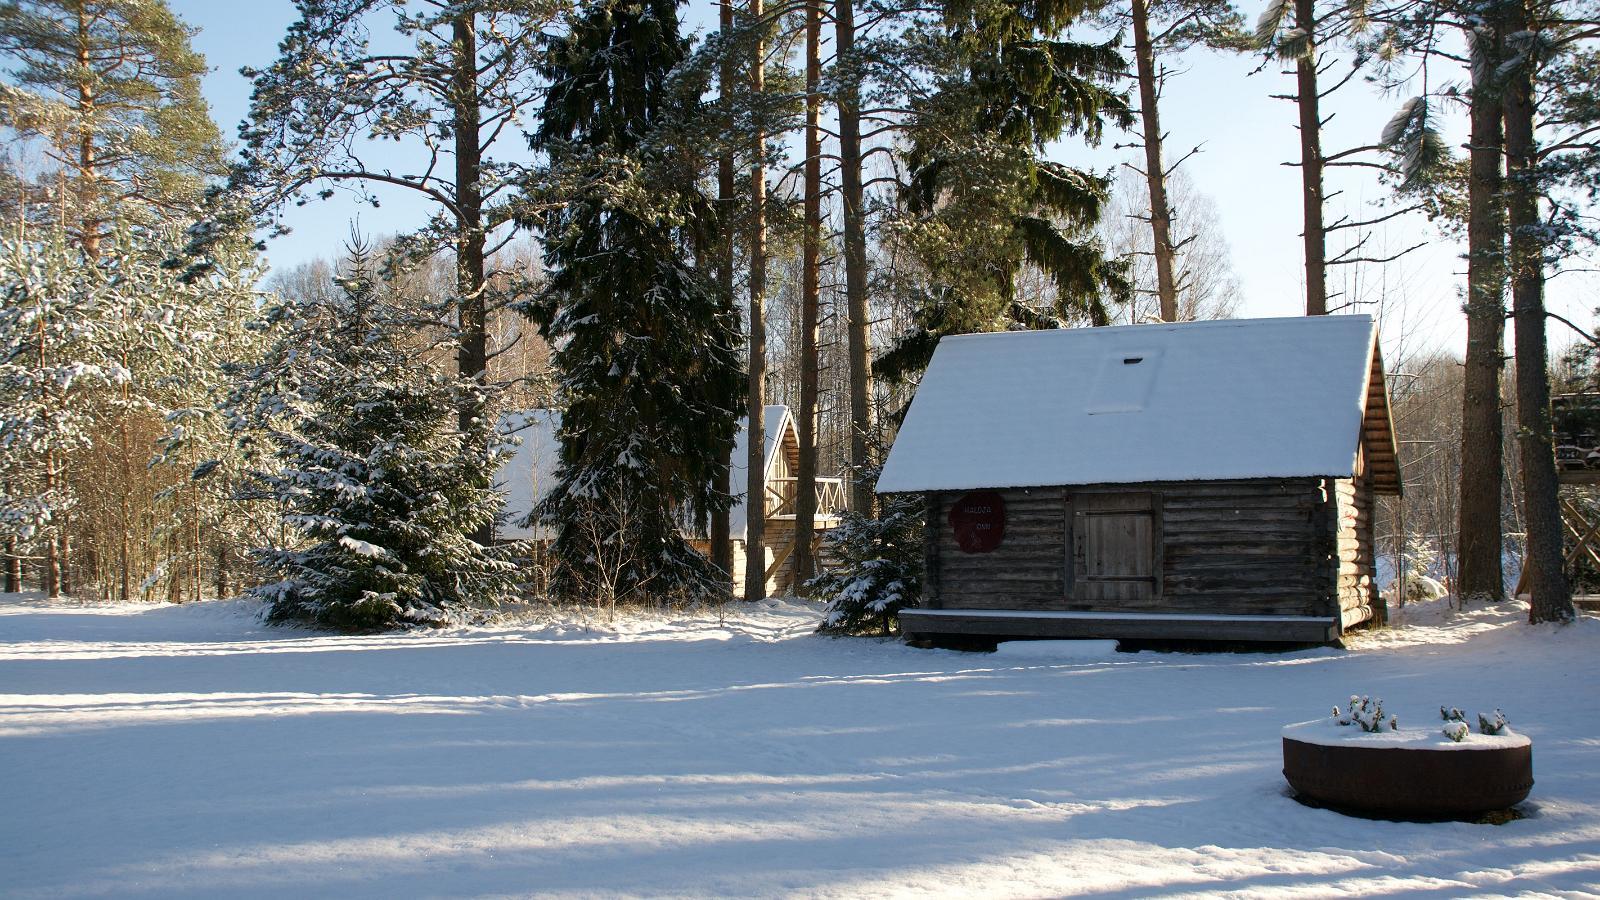 Fairy's hut